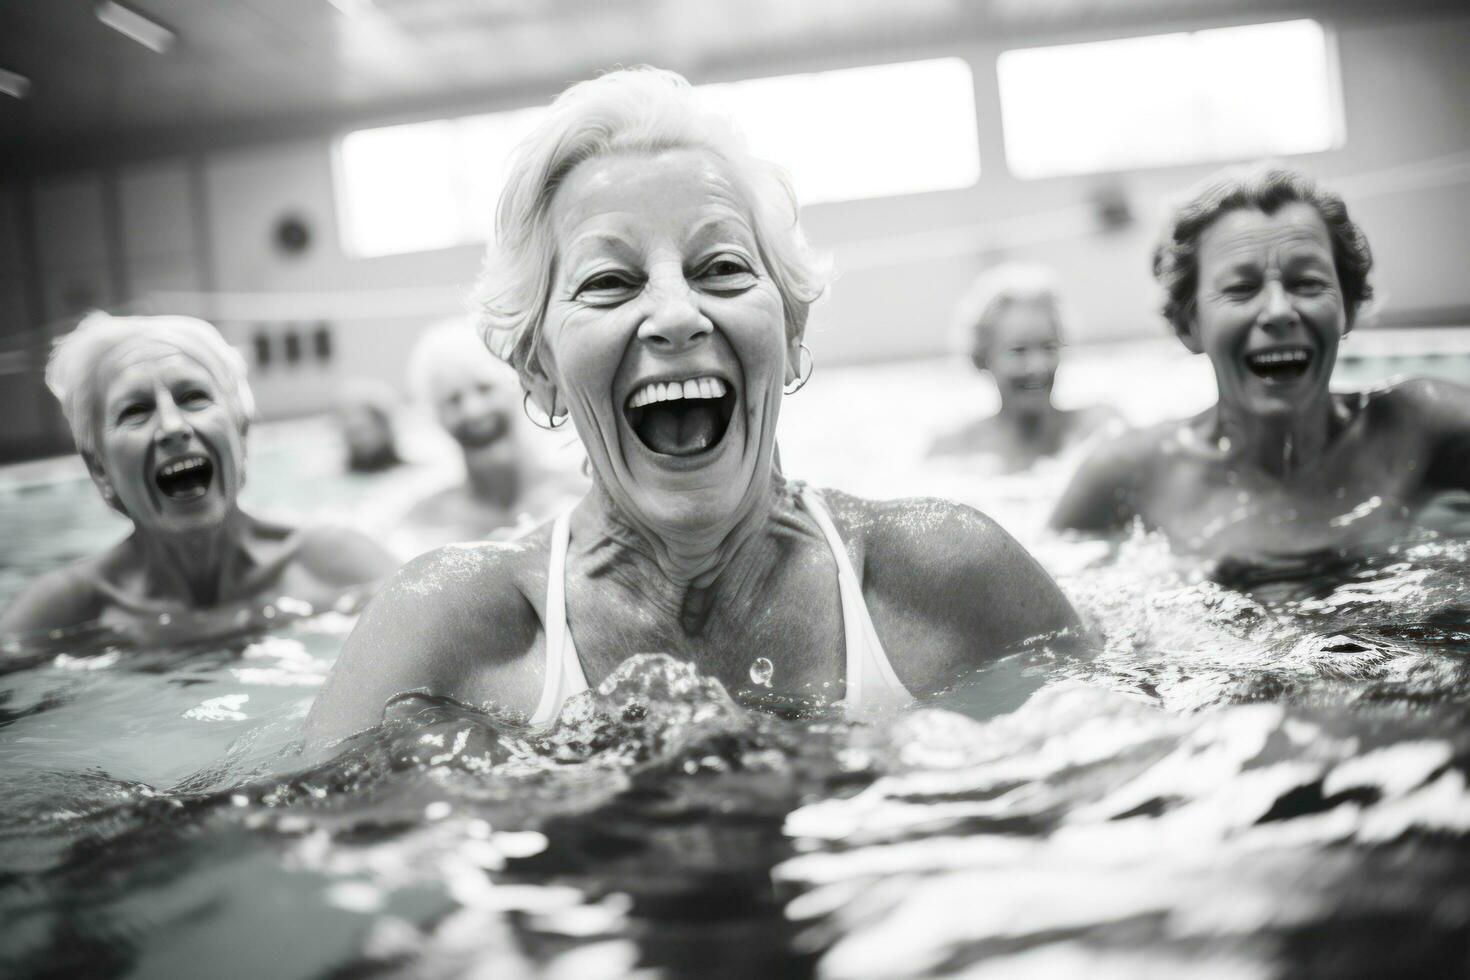 más viejo personas en nadando piscina foto